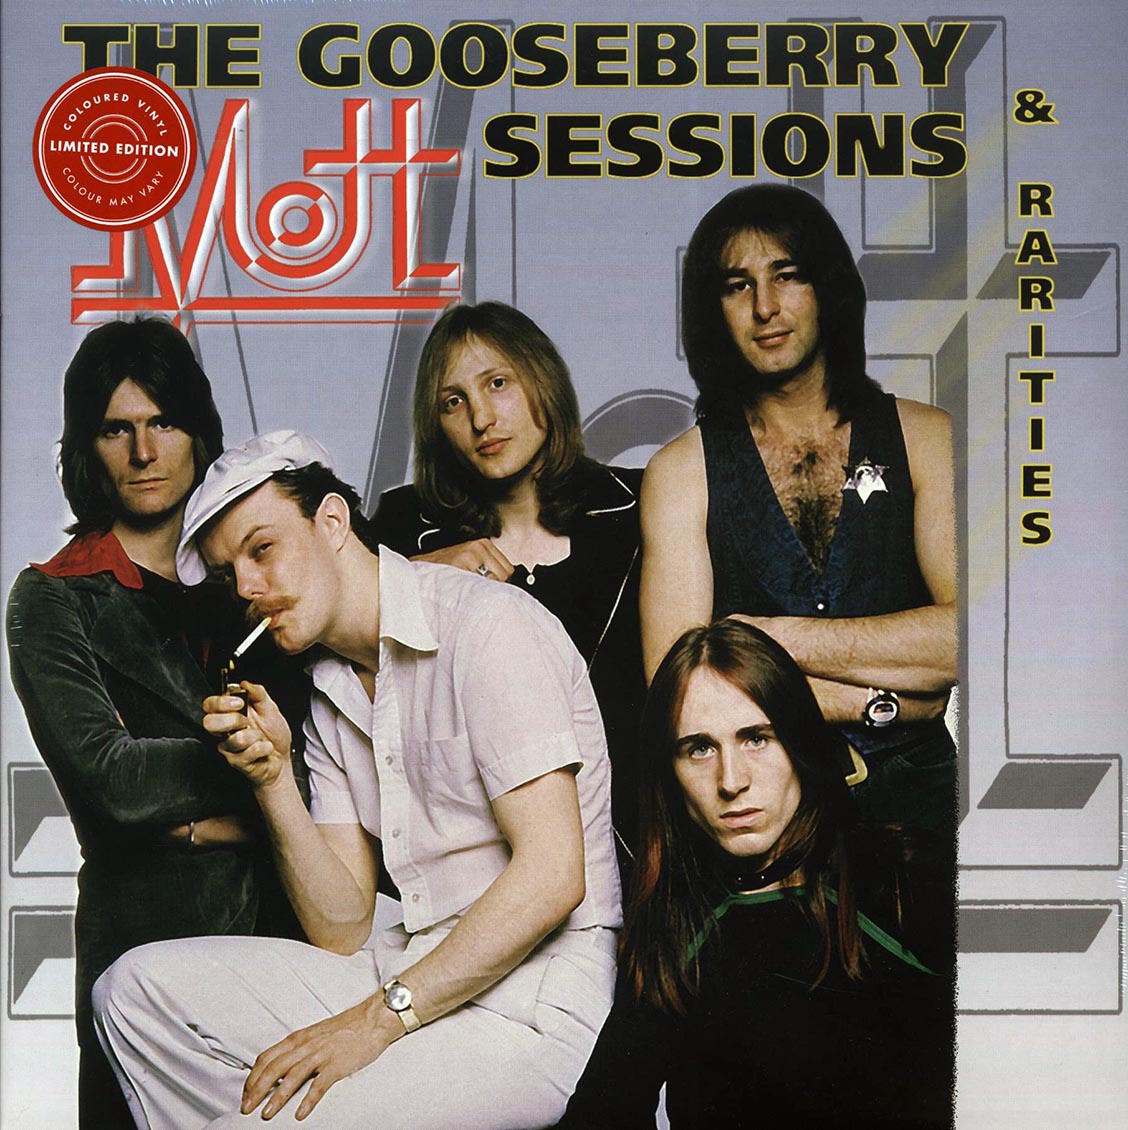 Mott - The Gooseberry Sessions & Rarities